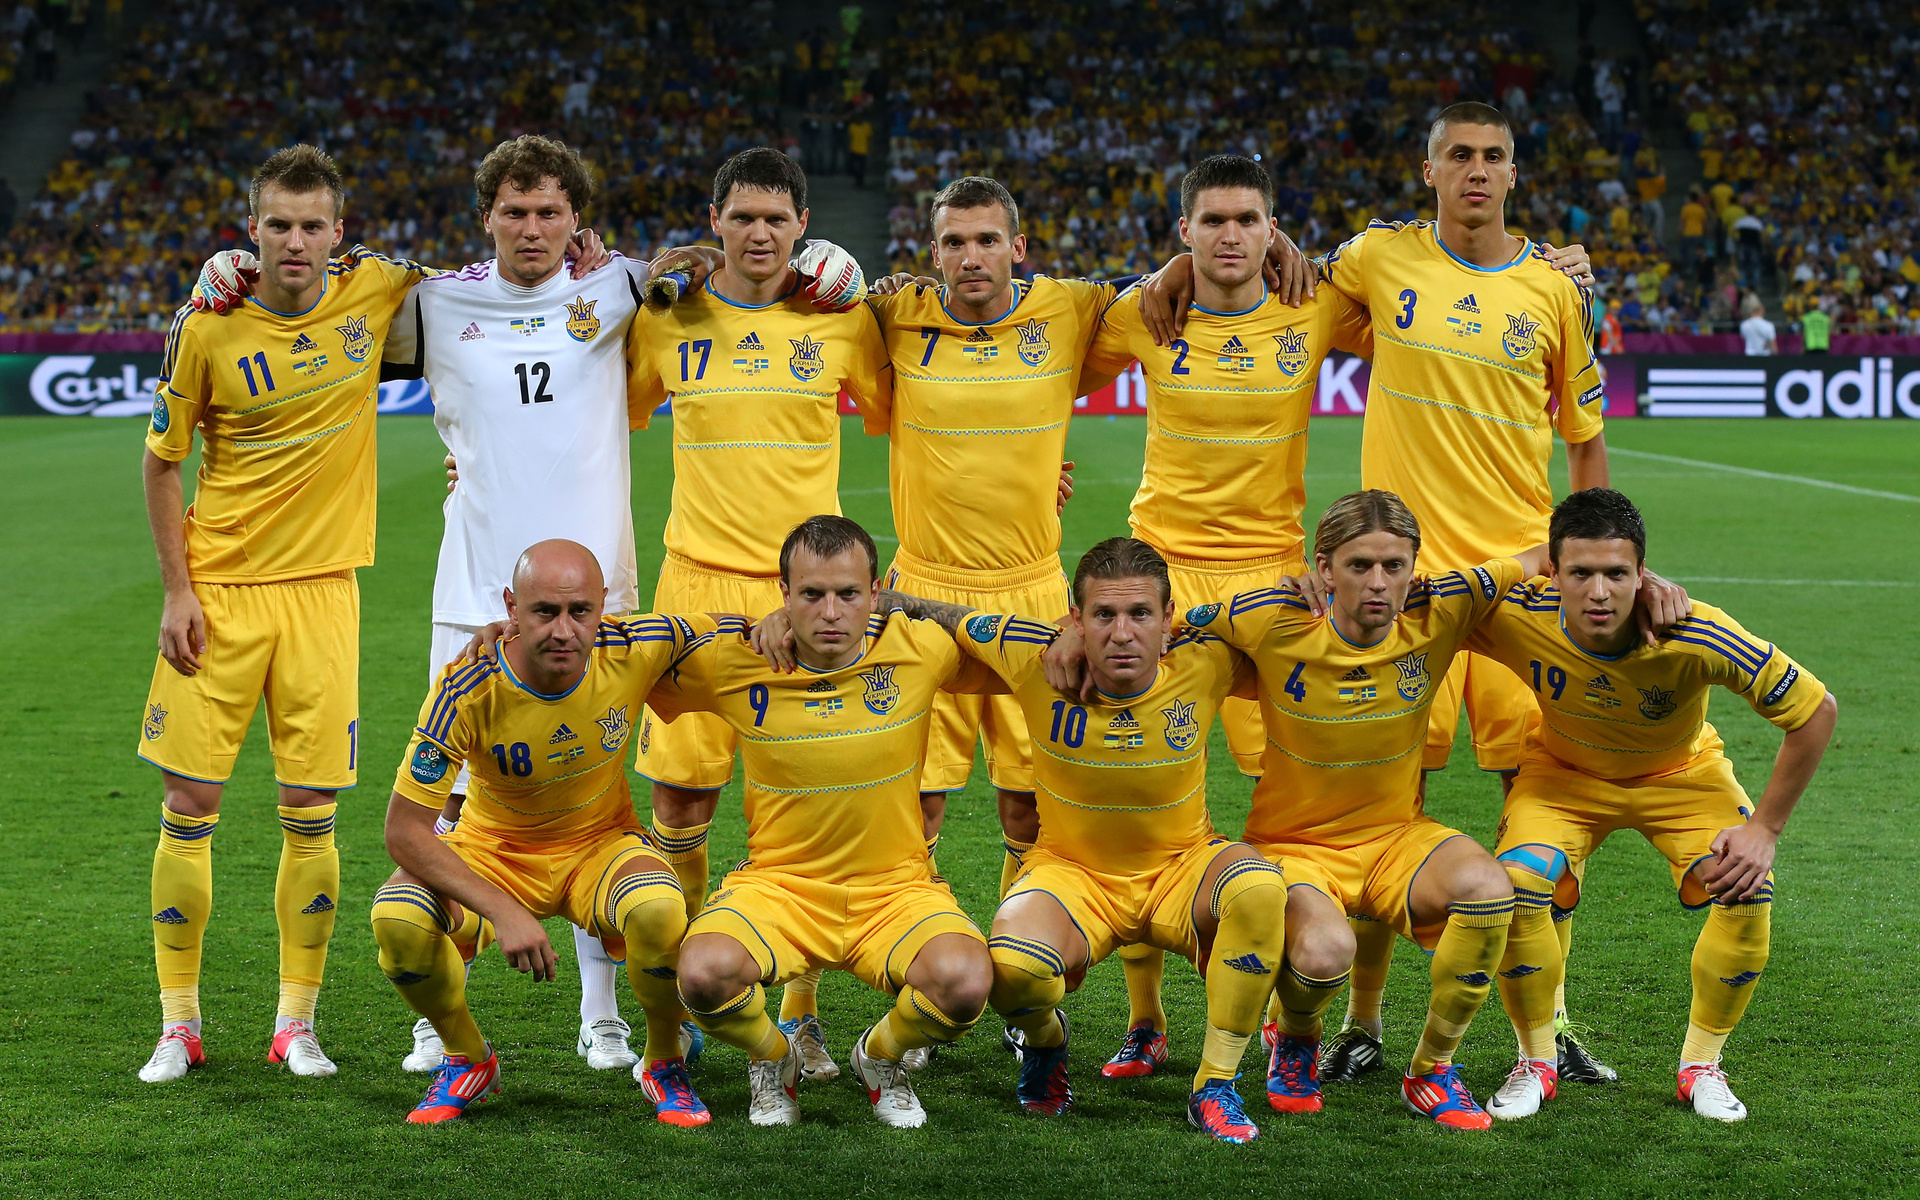 Скачать обои Сборная Украины По Футболу на телефон бесплатно